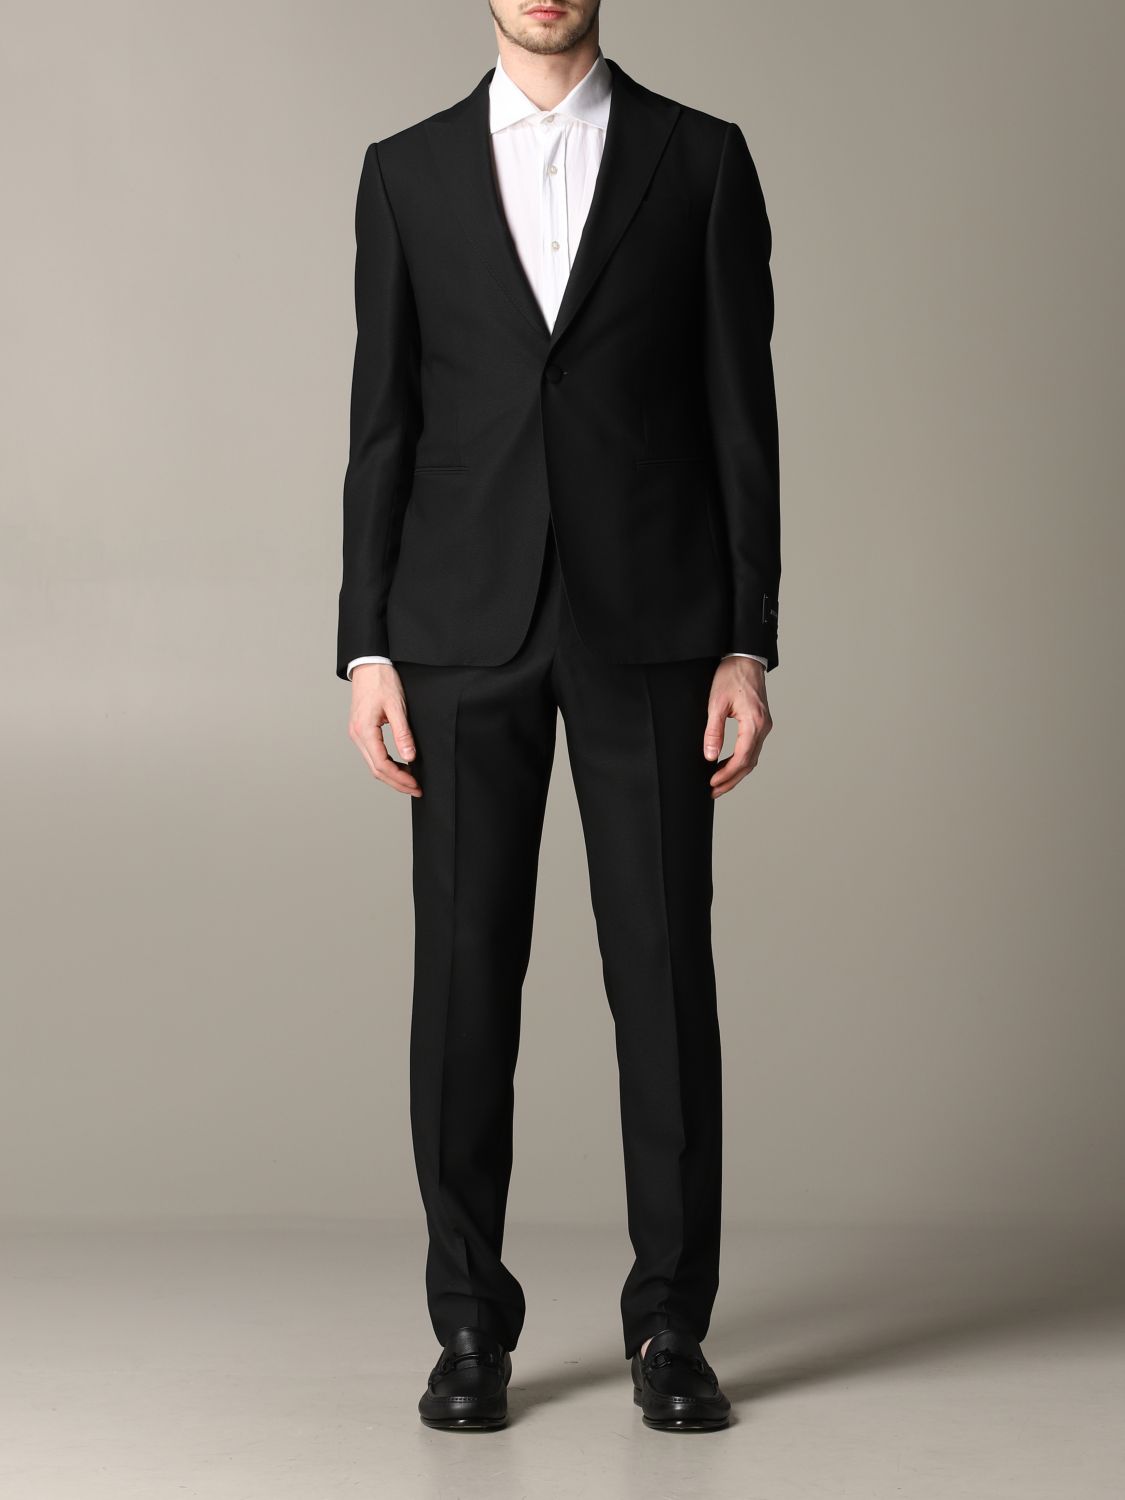 Z Zegna Outlet: drop 8 suit in sable wool - Black | Z Zegna suit 283KGQ ...